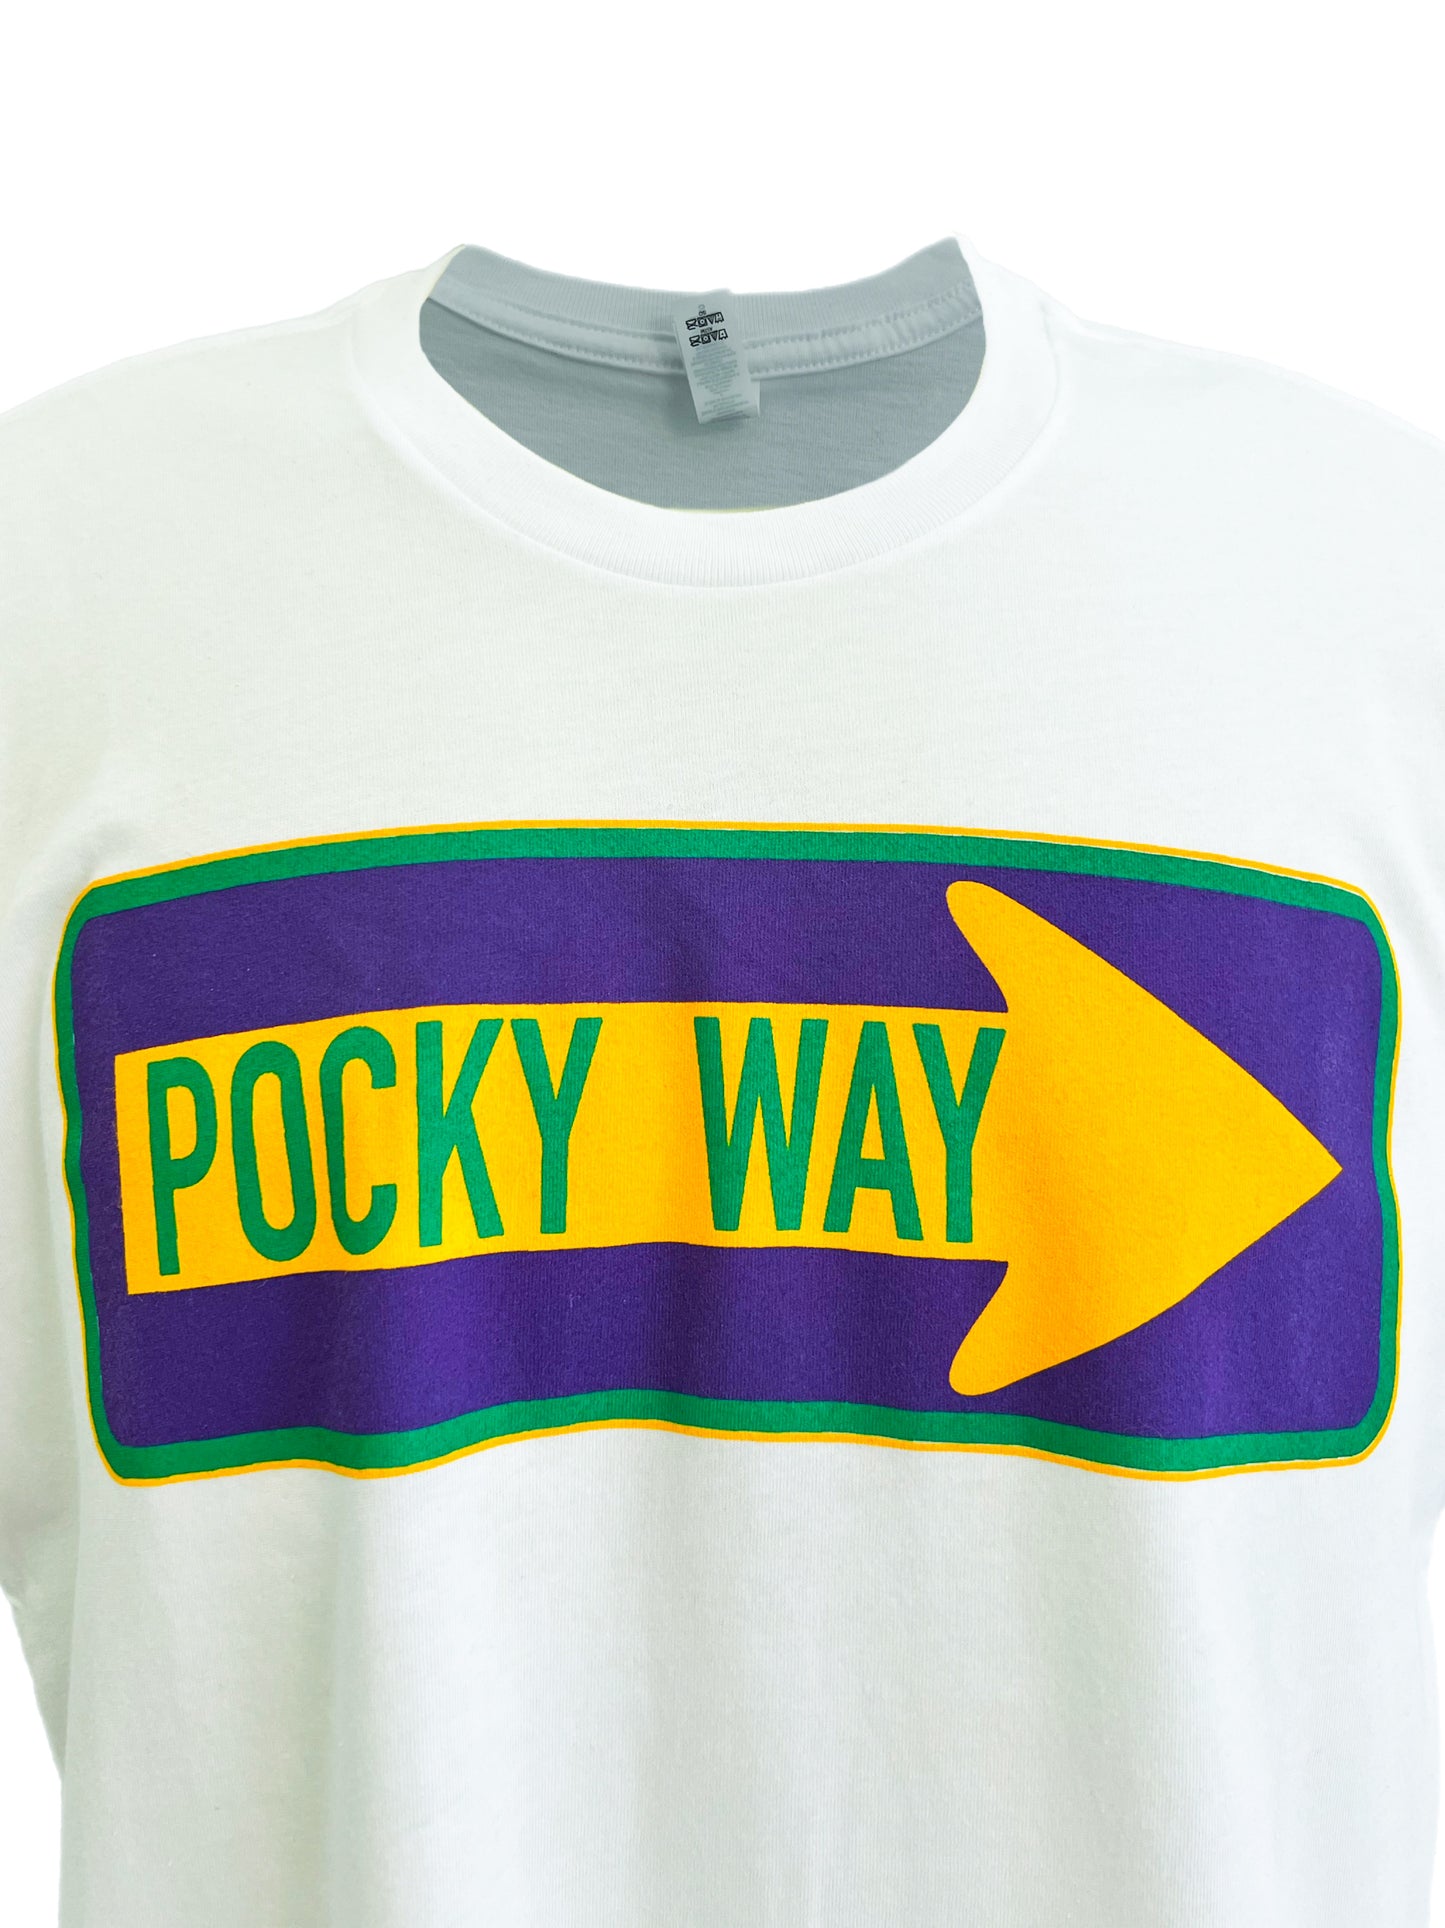 Pocky Way Tee